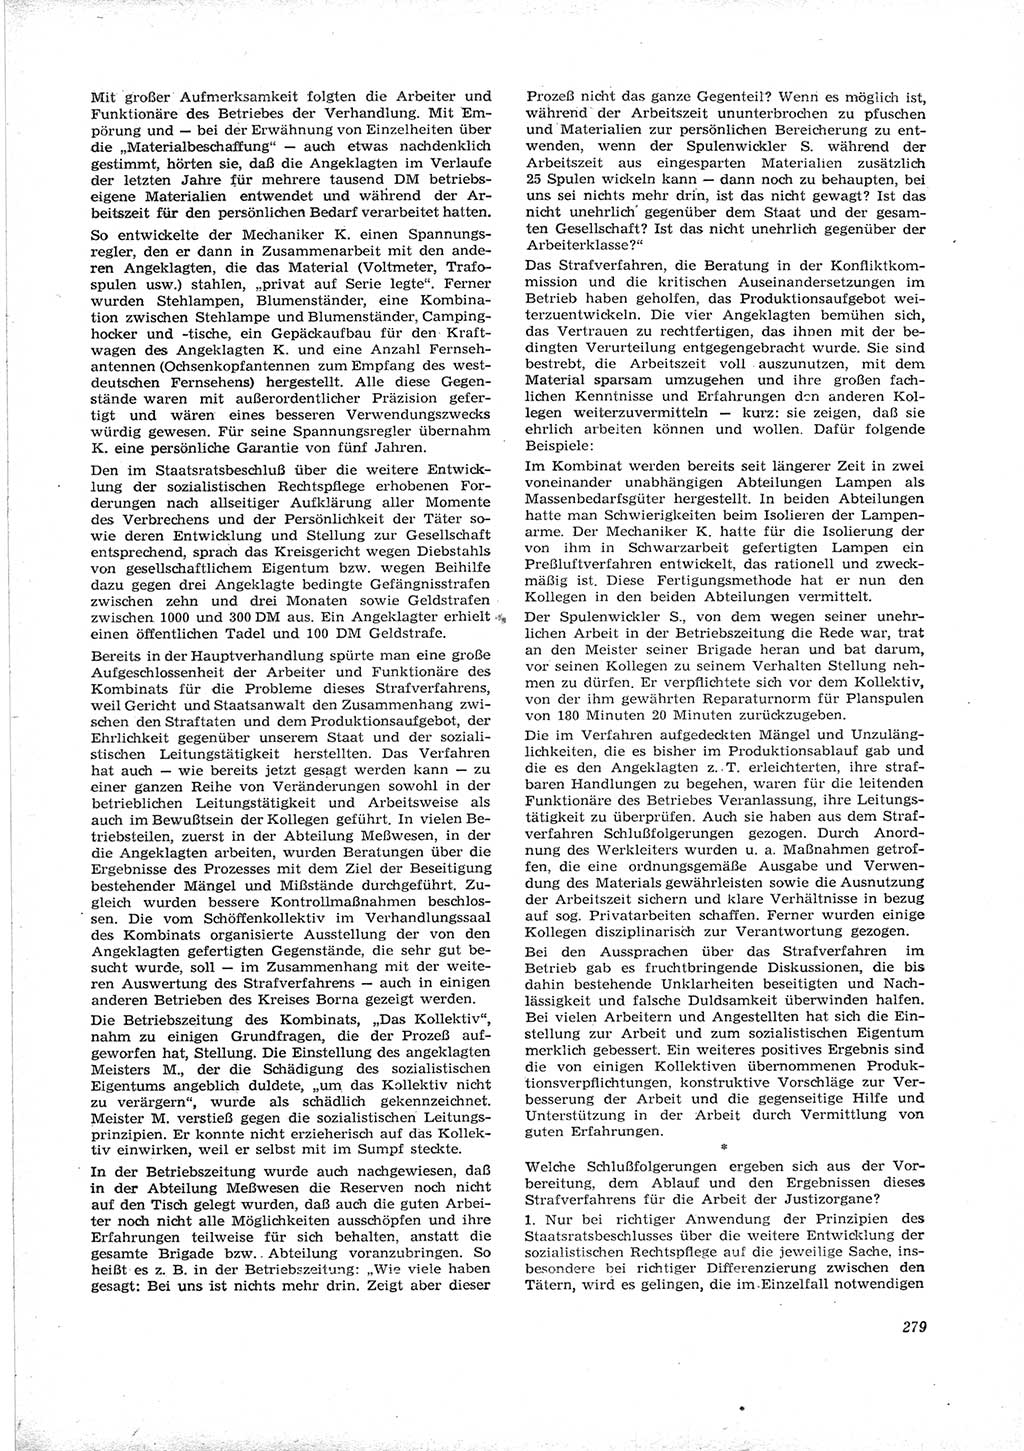 Neue Justiz (NJ), Zeitschrift für Recht und Rechtswissenschaft [Deutsche Demokratische Republik (DDR)], 16. Jahrgang 1962, Seite 279 (NJ DDR 1962, S. 279)